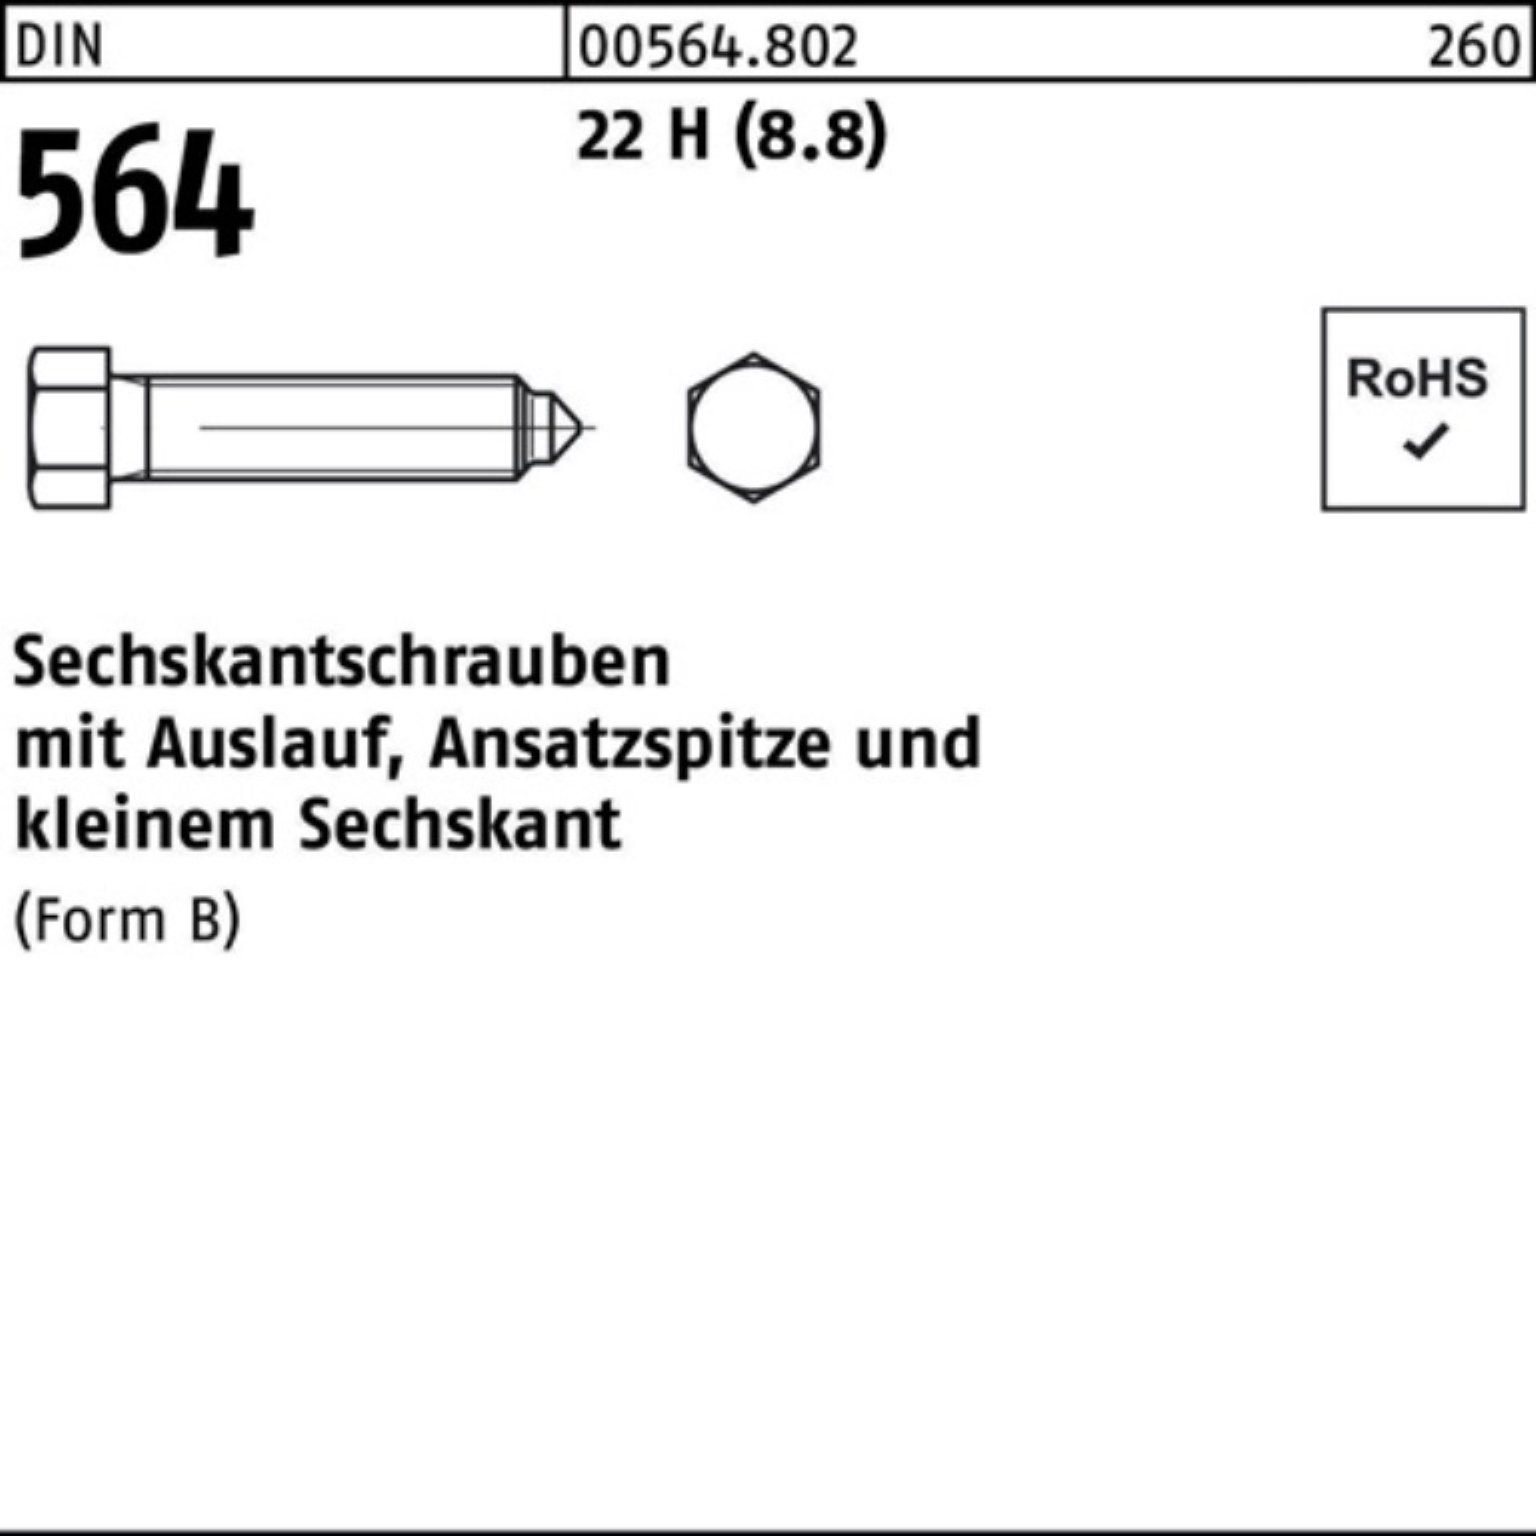 Reyher Sechskantschraube 100er Pack 16x 22 BM DIN 564 40 Sechskantschraube Ansatzspitze/Auslauf